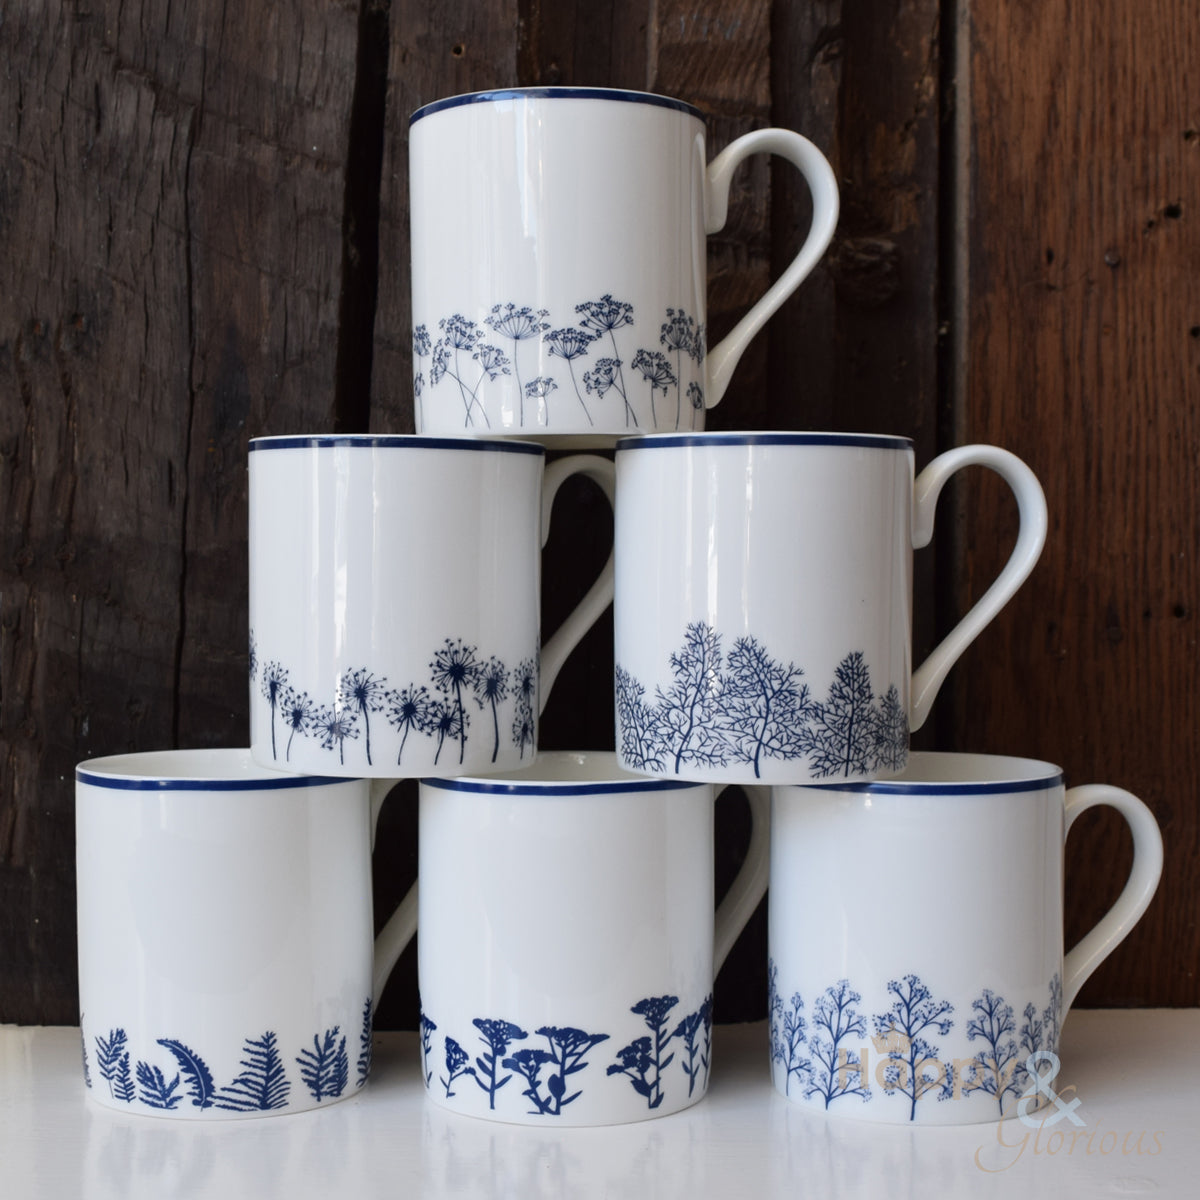 Navy blue & white dandelion silhouette fine china mug by Kate Tompsett